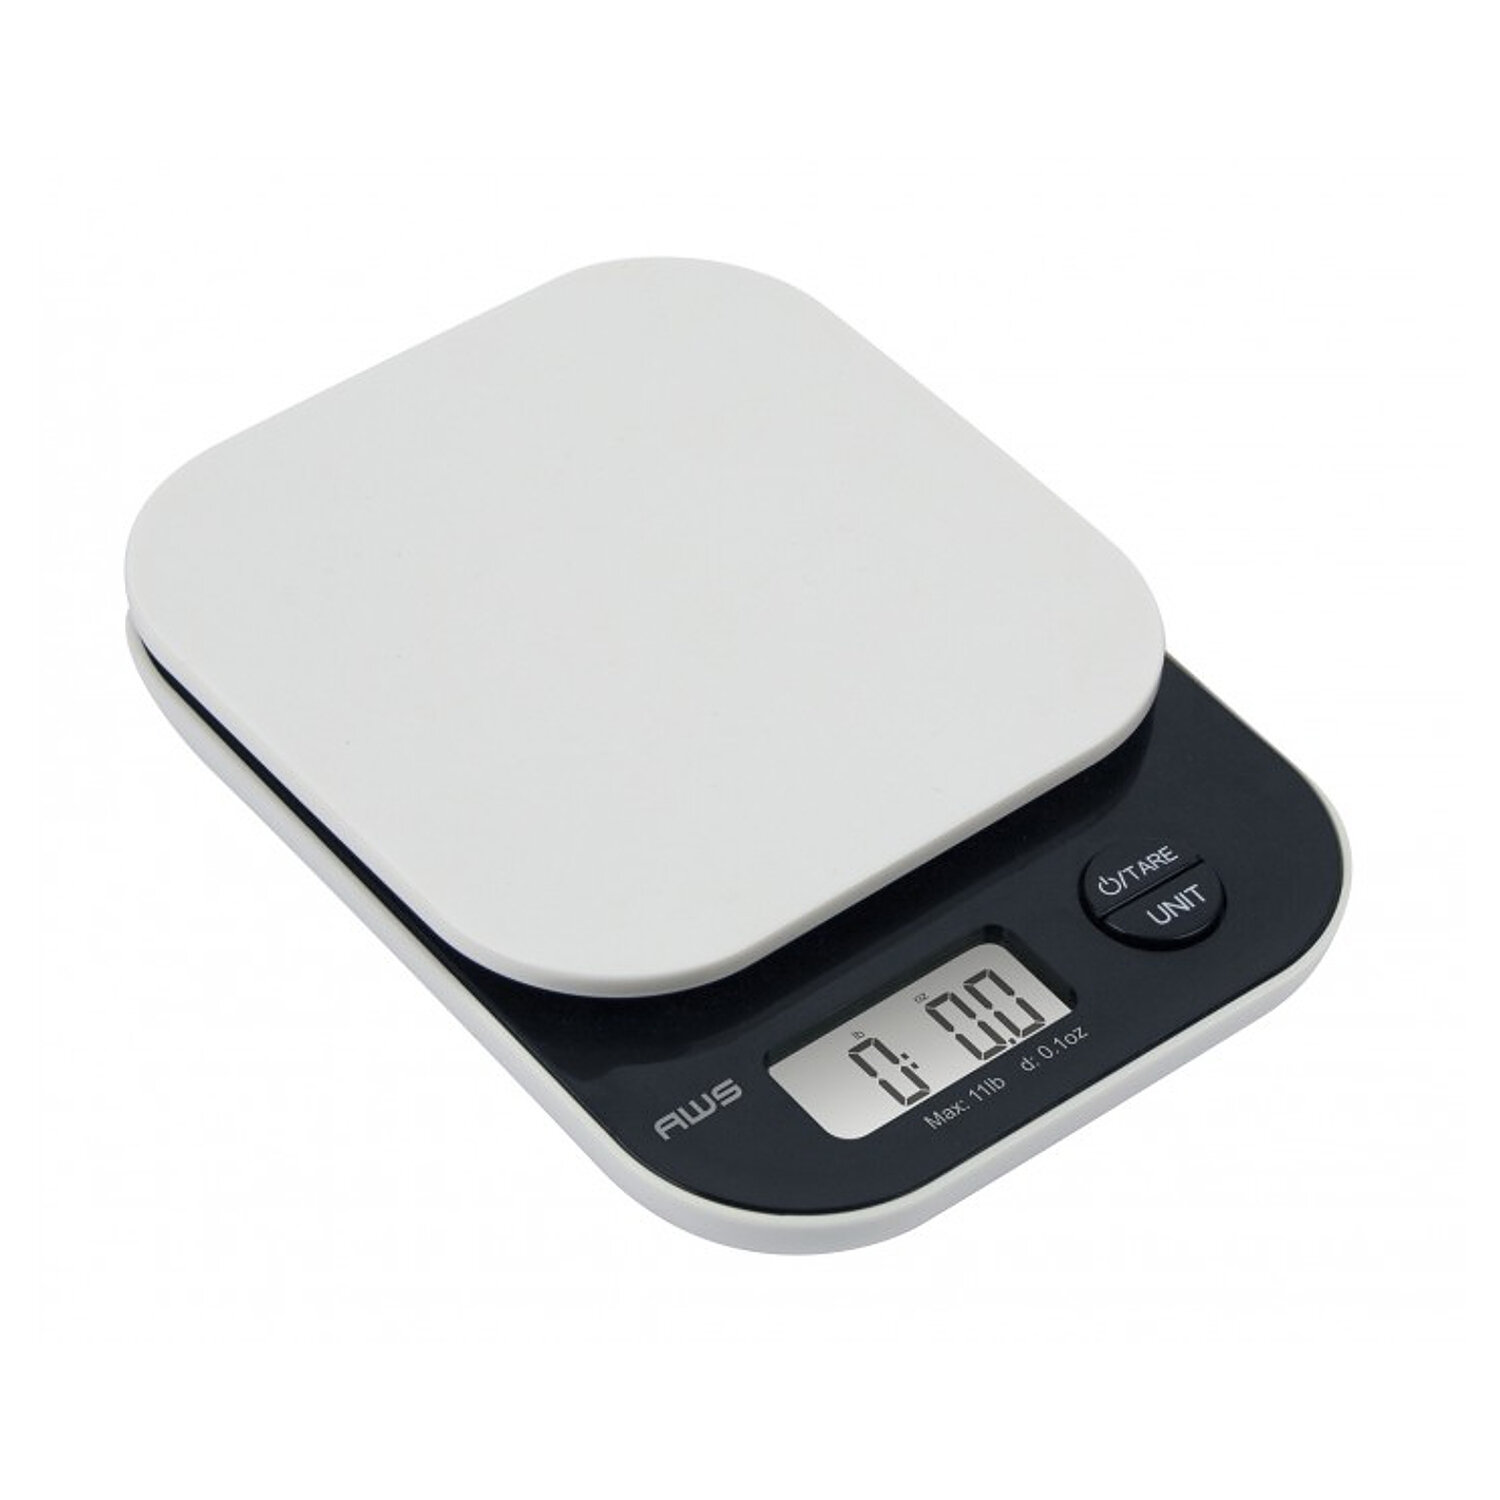 American Weightscales Lb-501 Weigh Scales Scala Digitale da Cucina 